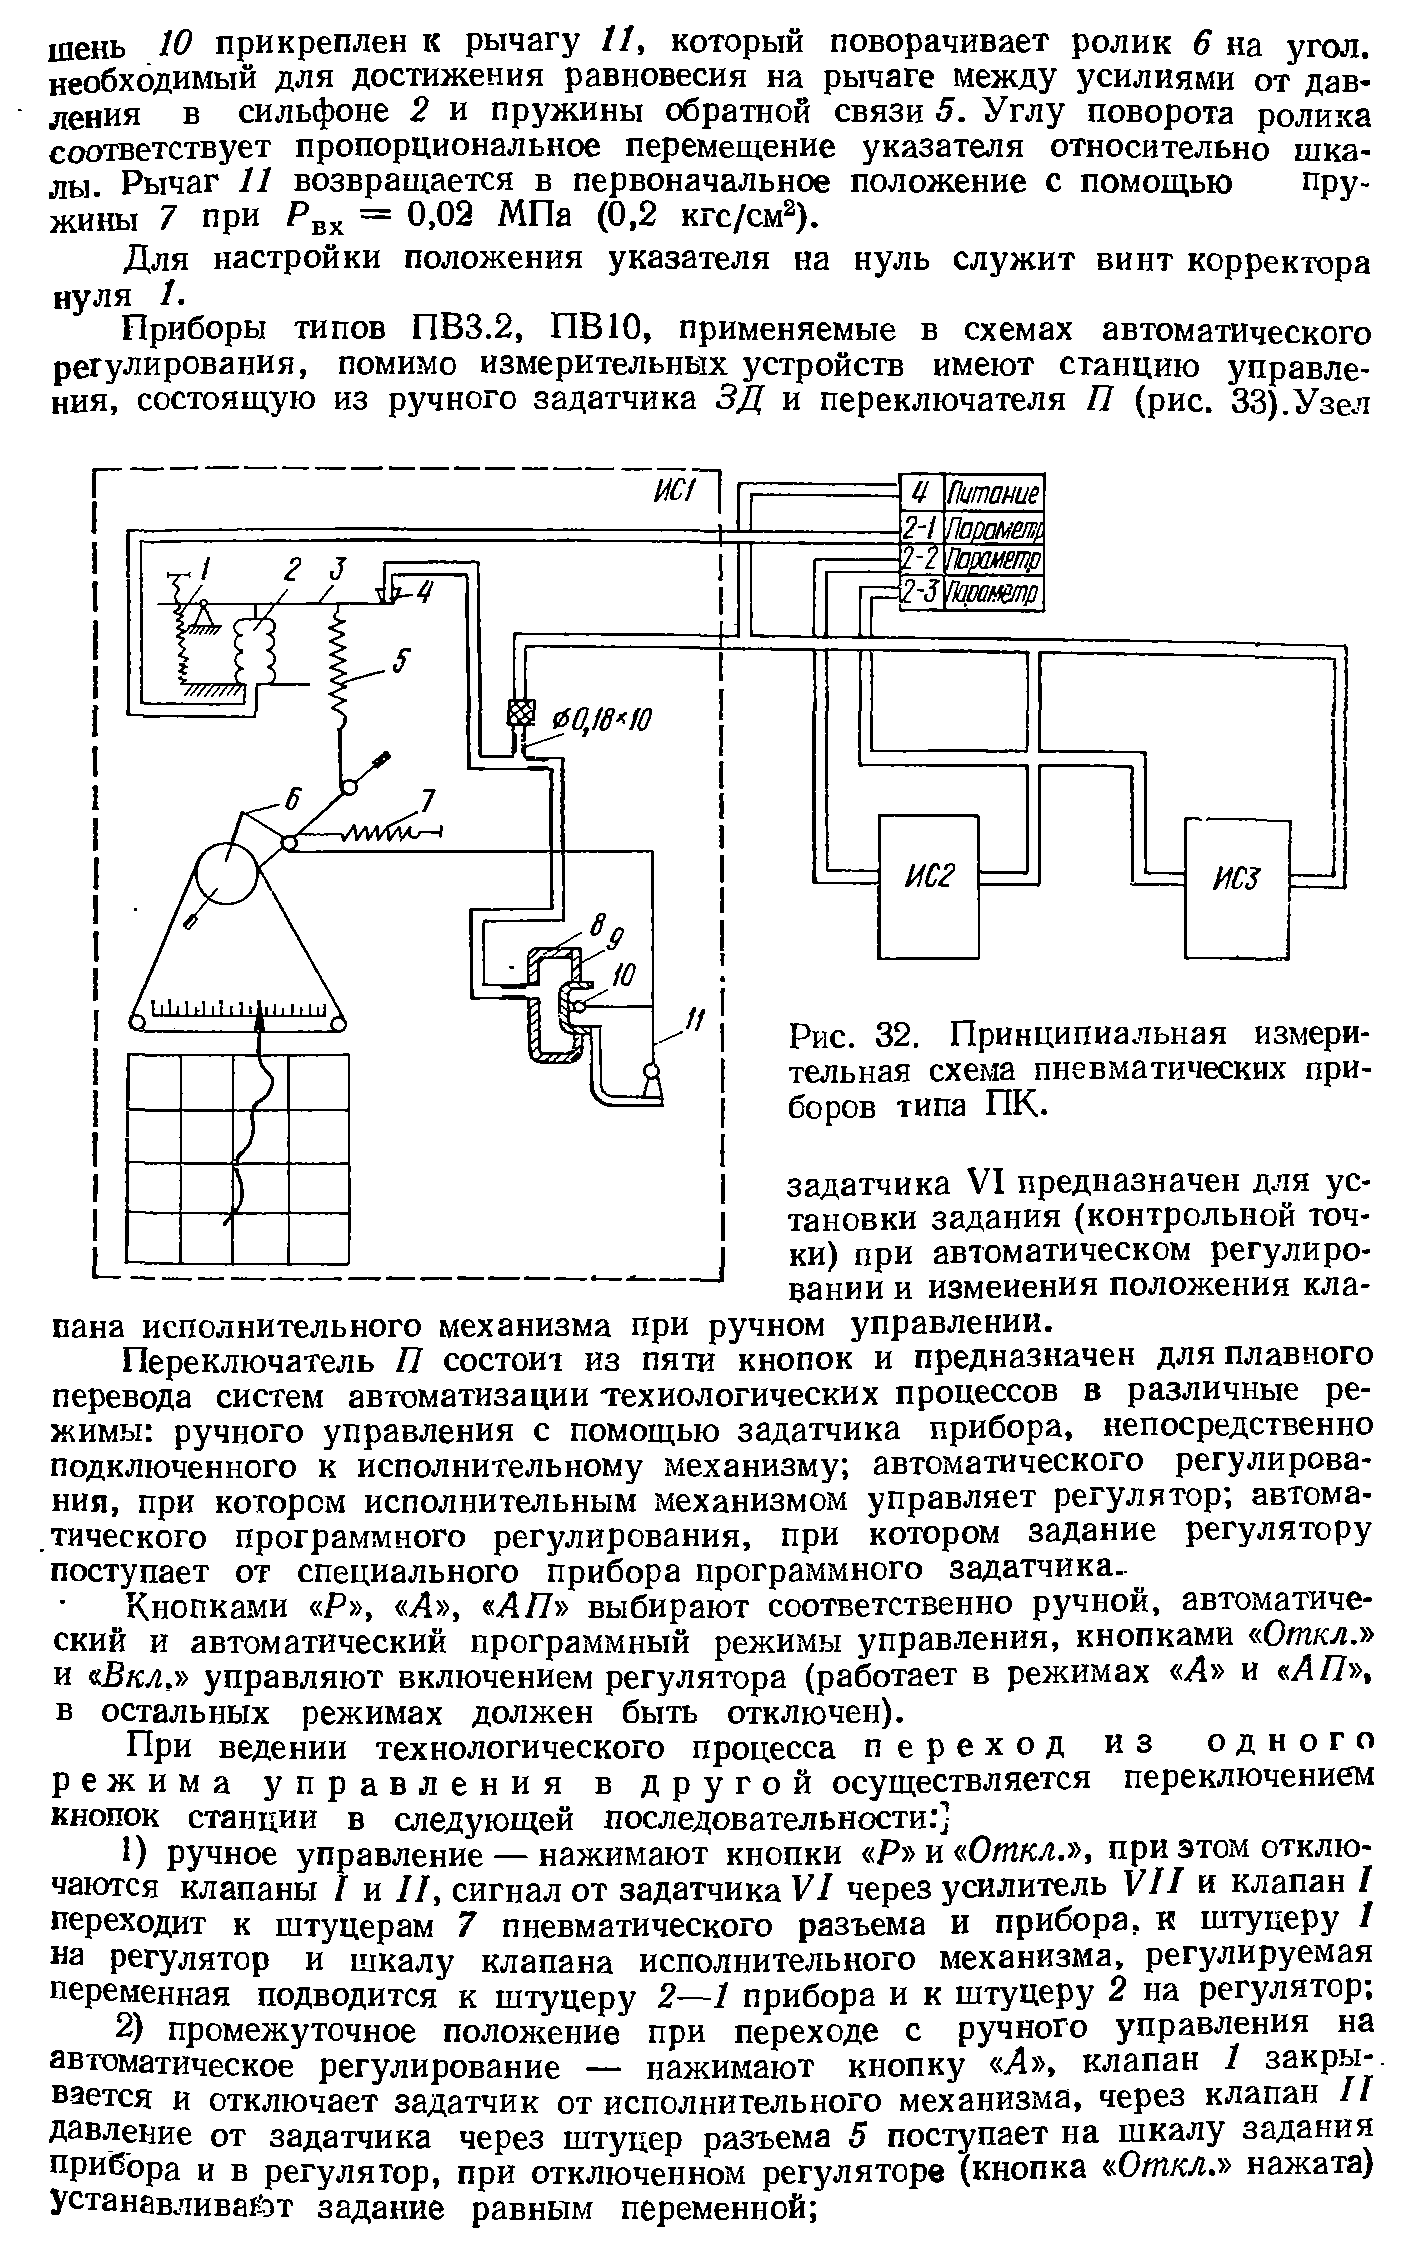 Рис. 32. Принципиальная измерительная схема пневматических приборов типа ПК.
